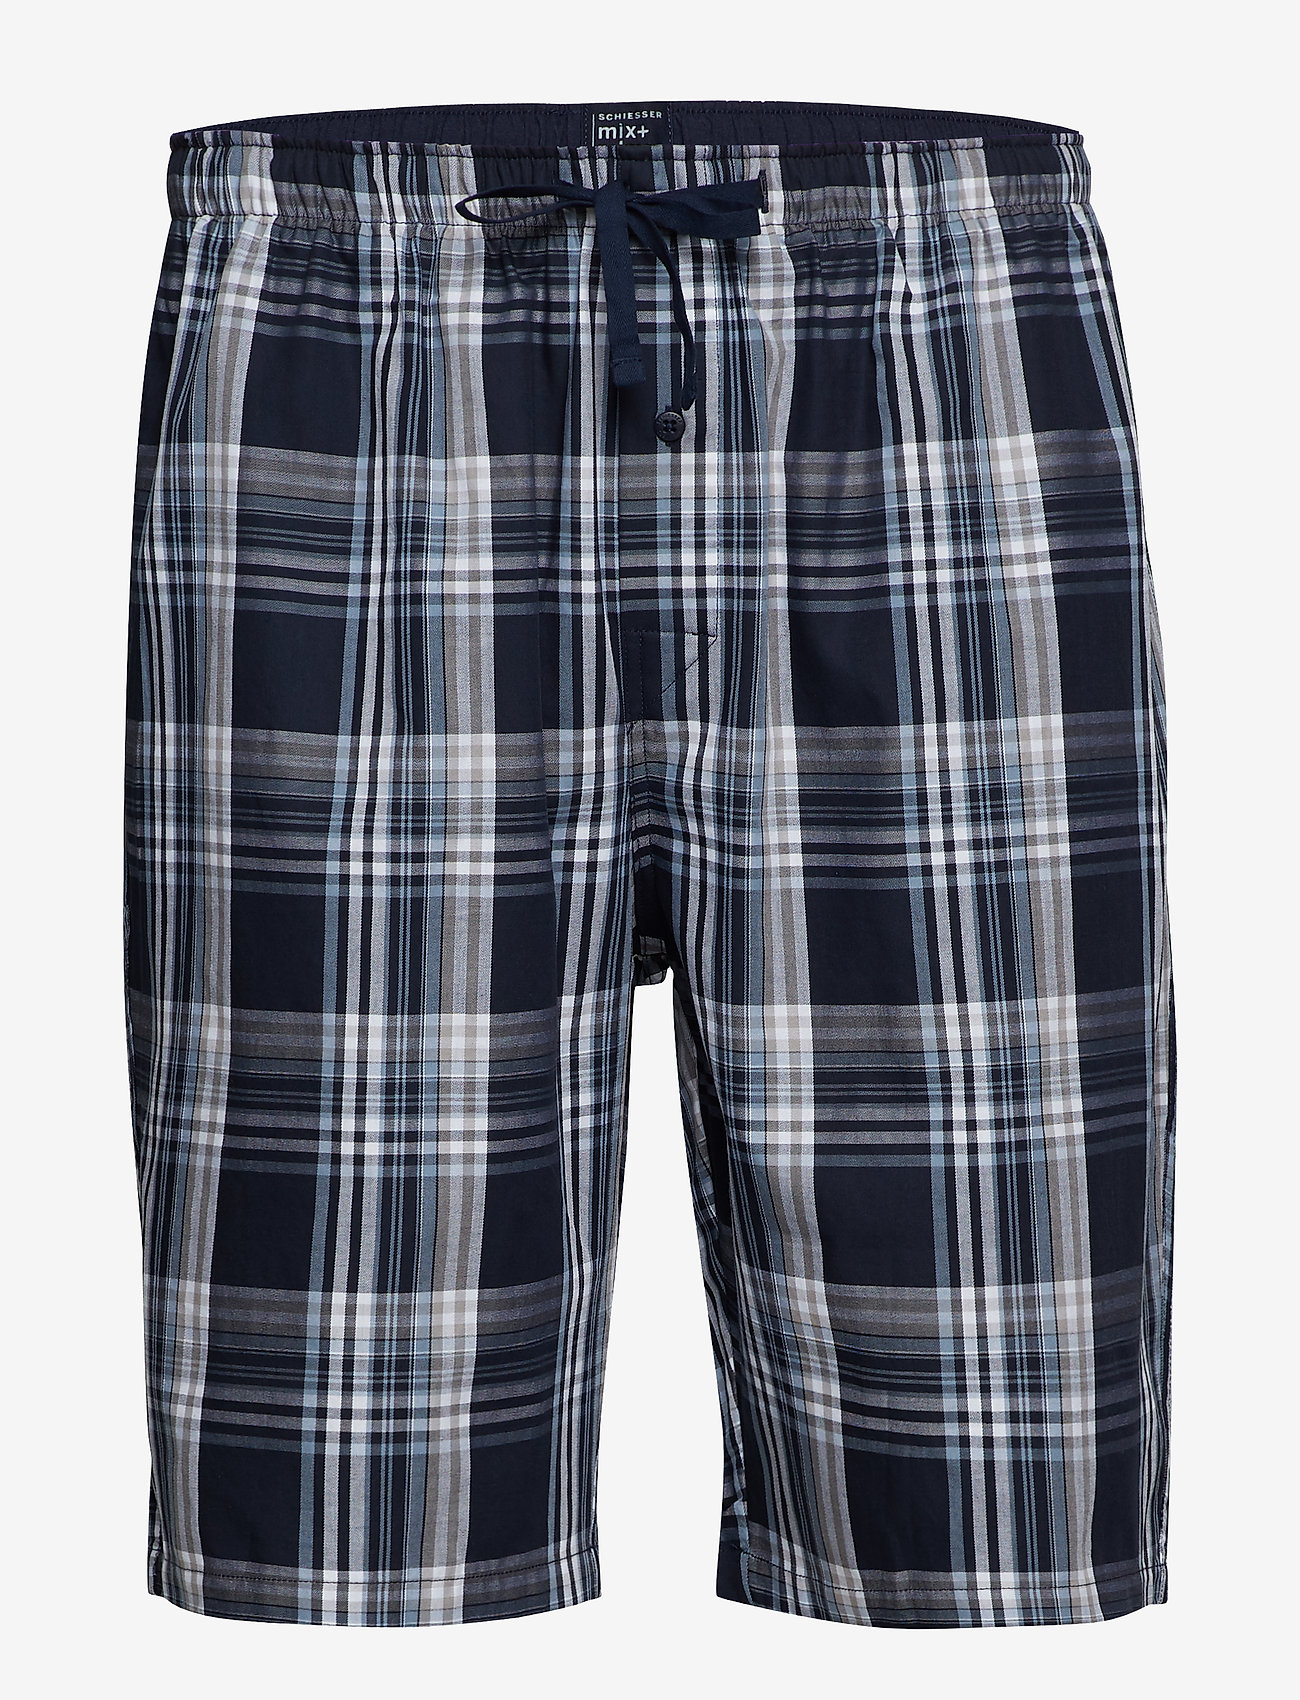 Schiesser - Shorts - pyjama bottoms - dark blue - 0